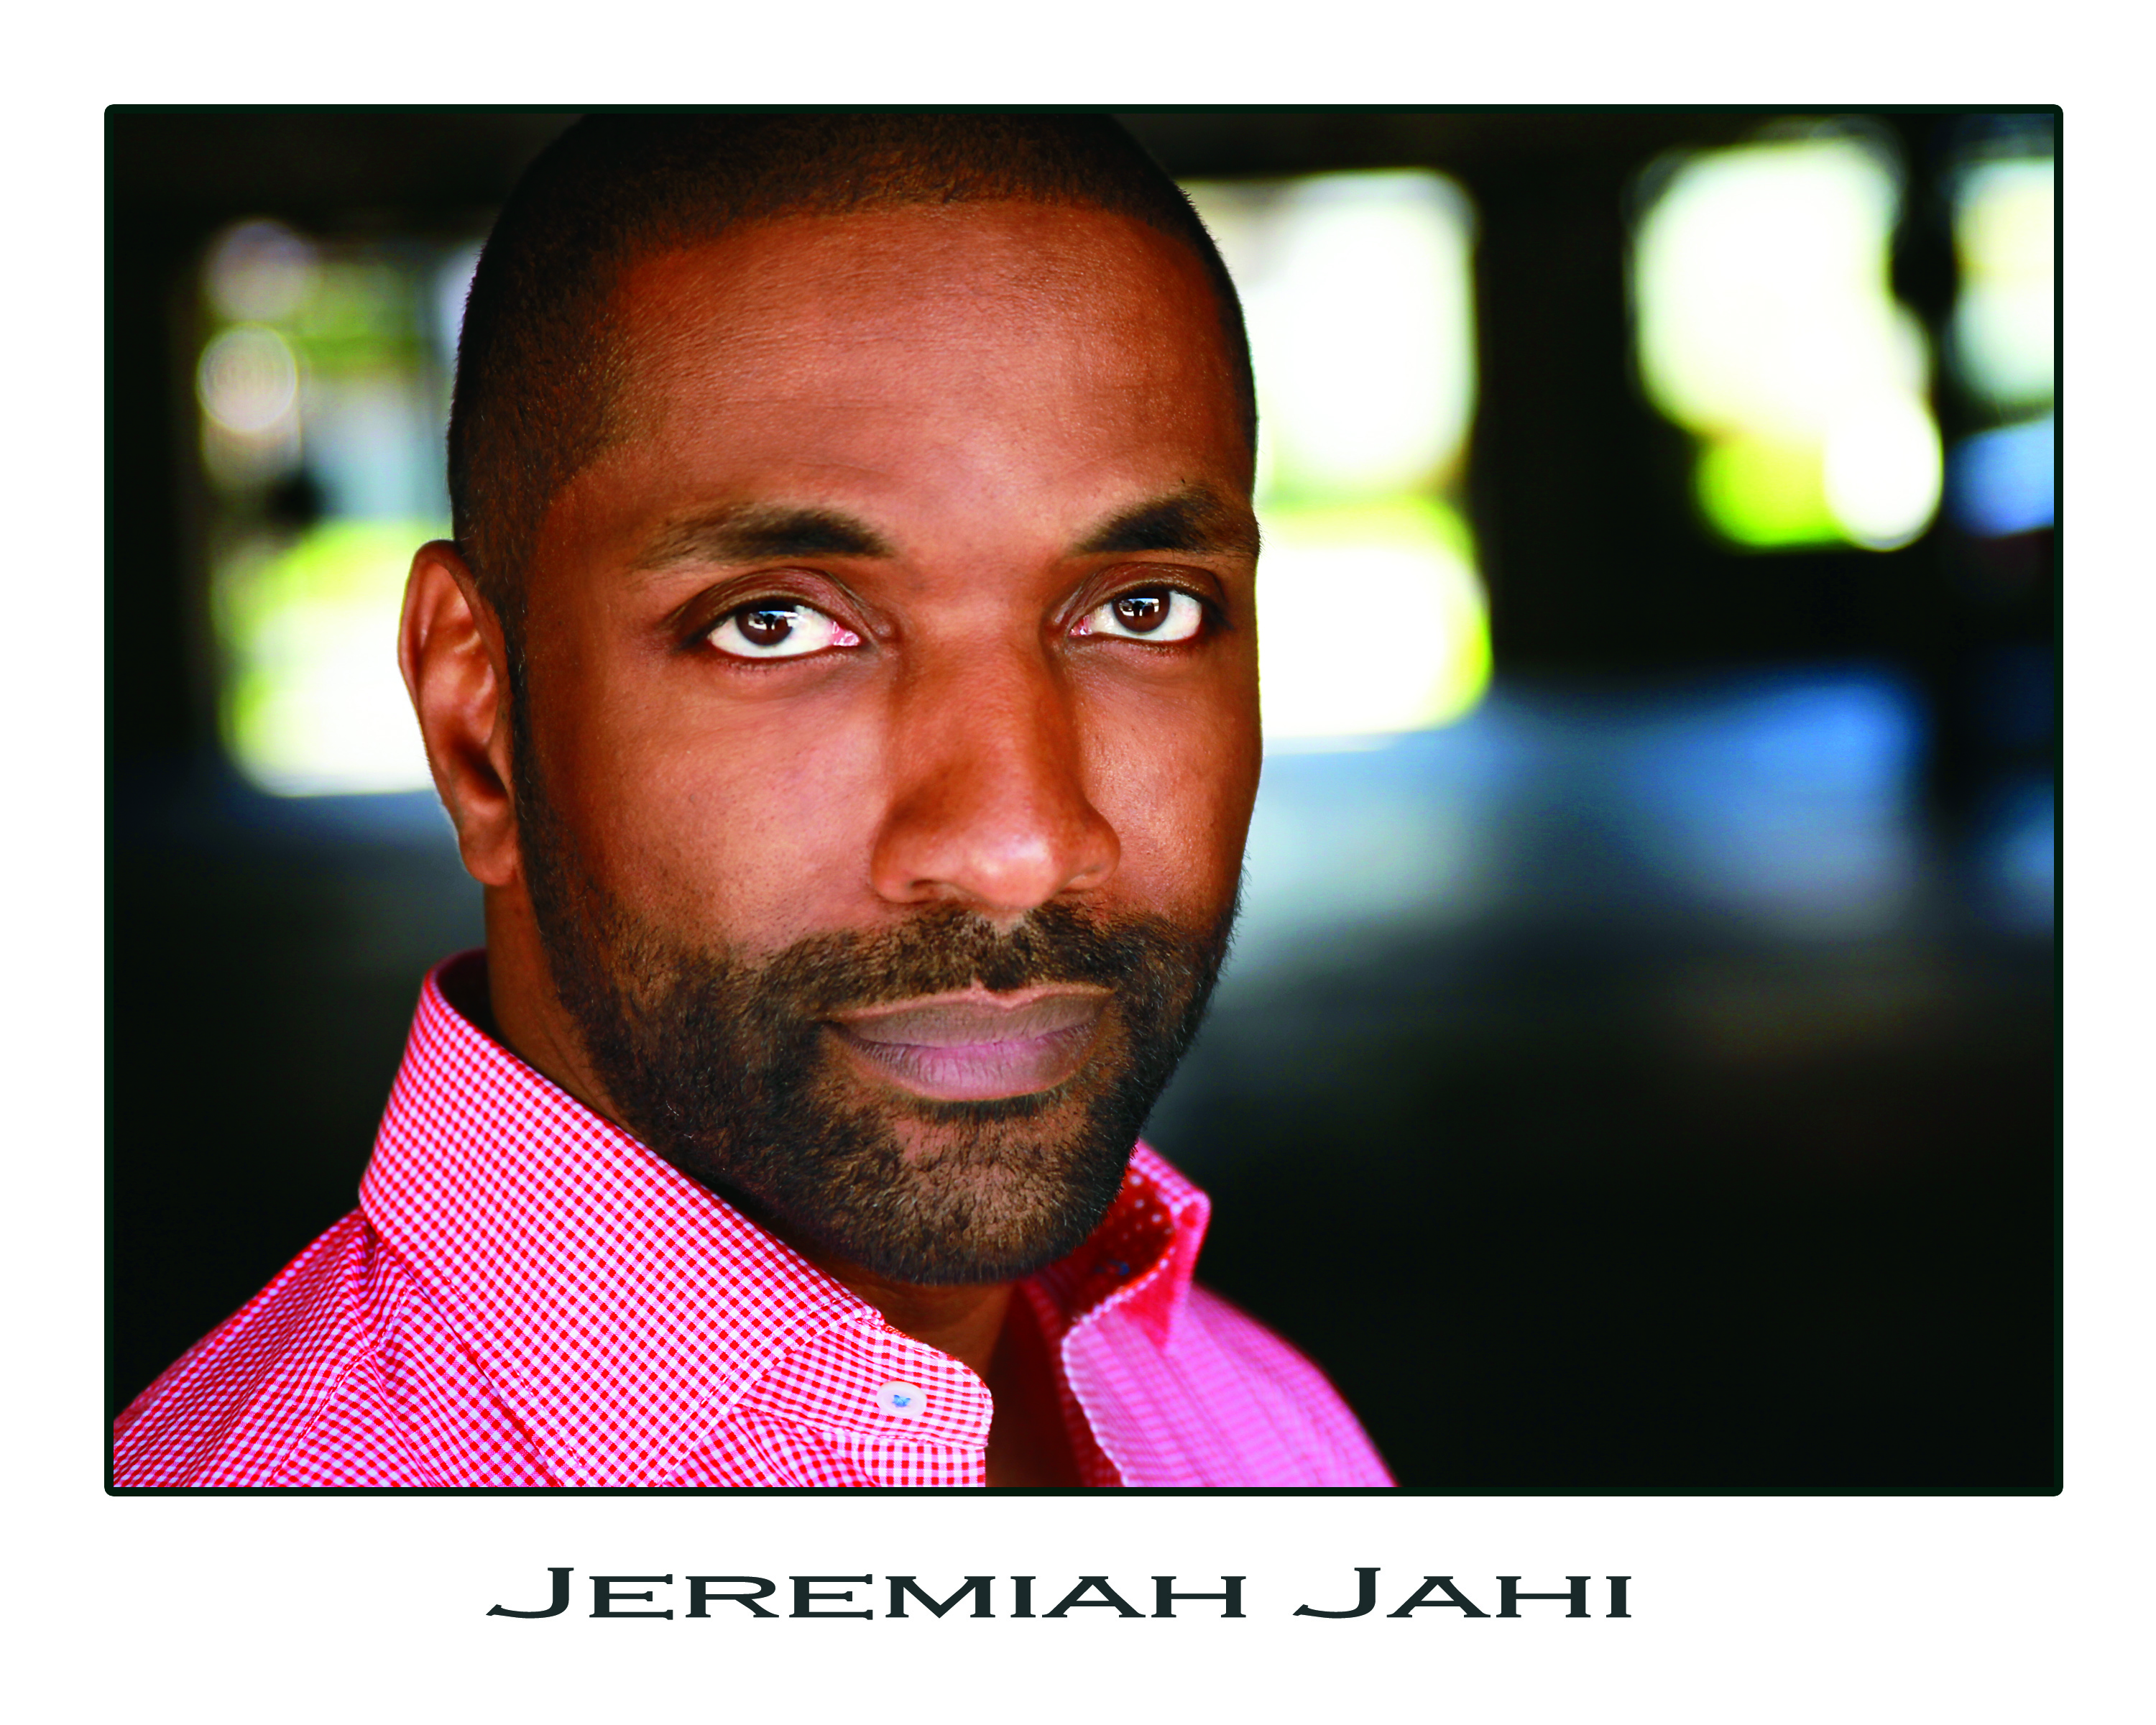 Jeremiah Jahi